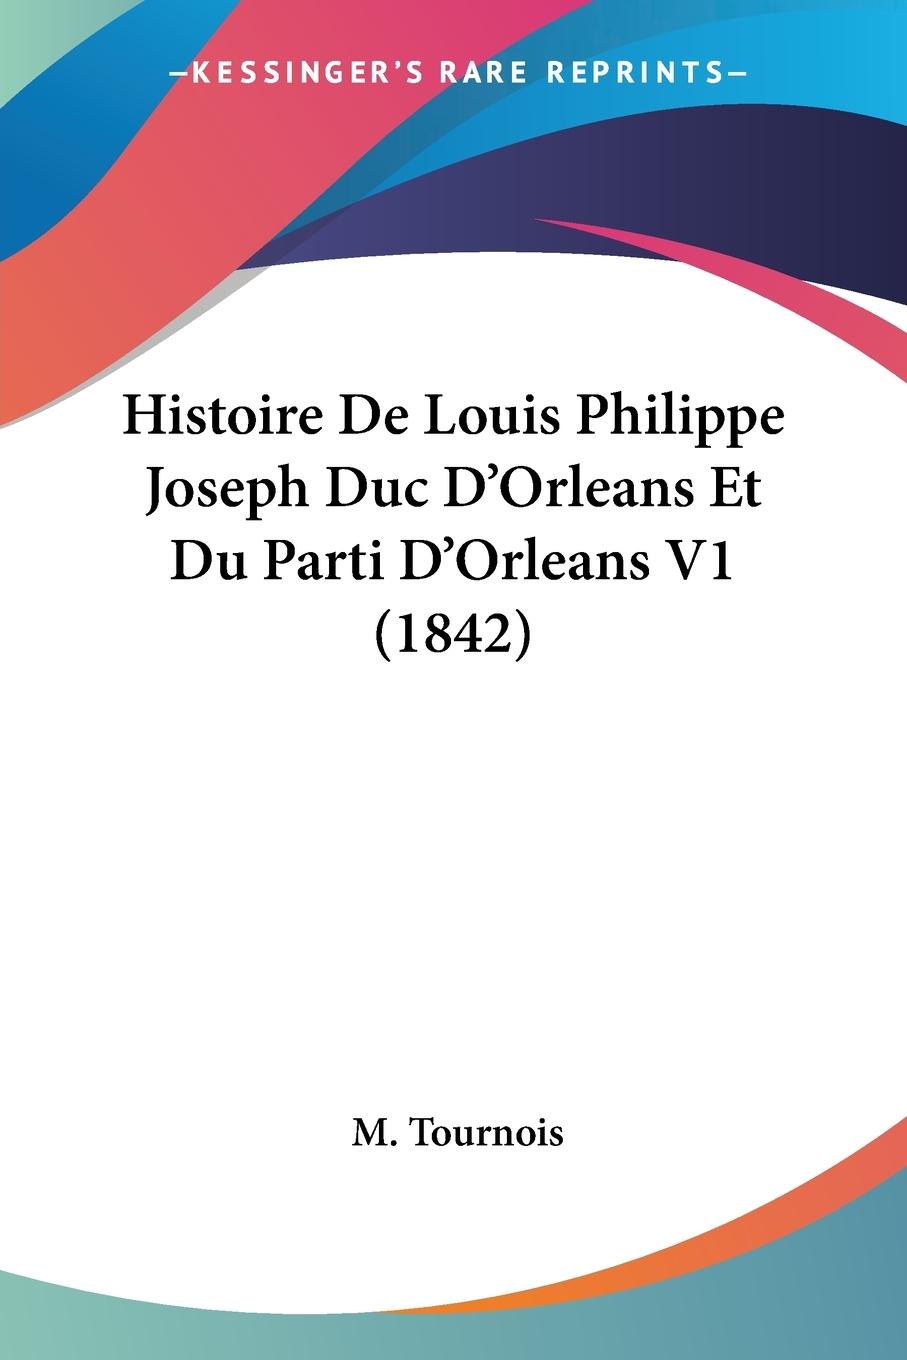 Histoire De Louis Philippe Joseph Duc D Orleans Et Du Parti D Orleans V1 (1842) - Tournois, M.